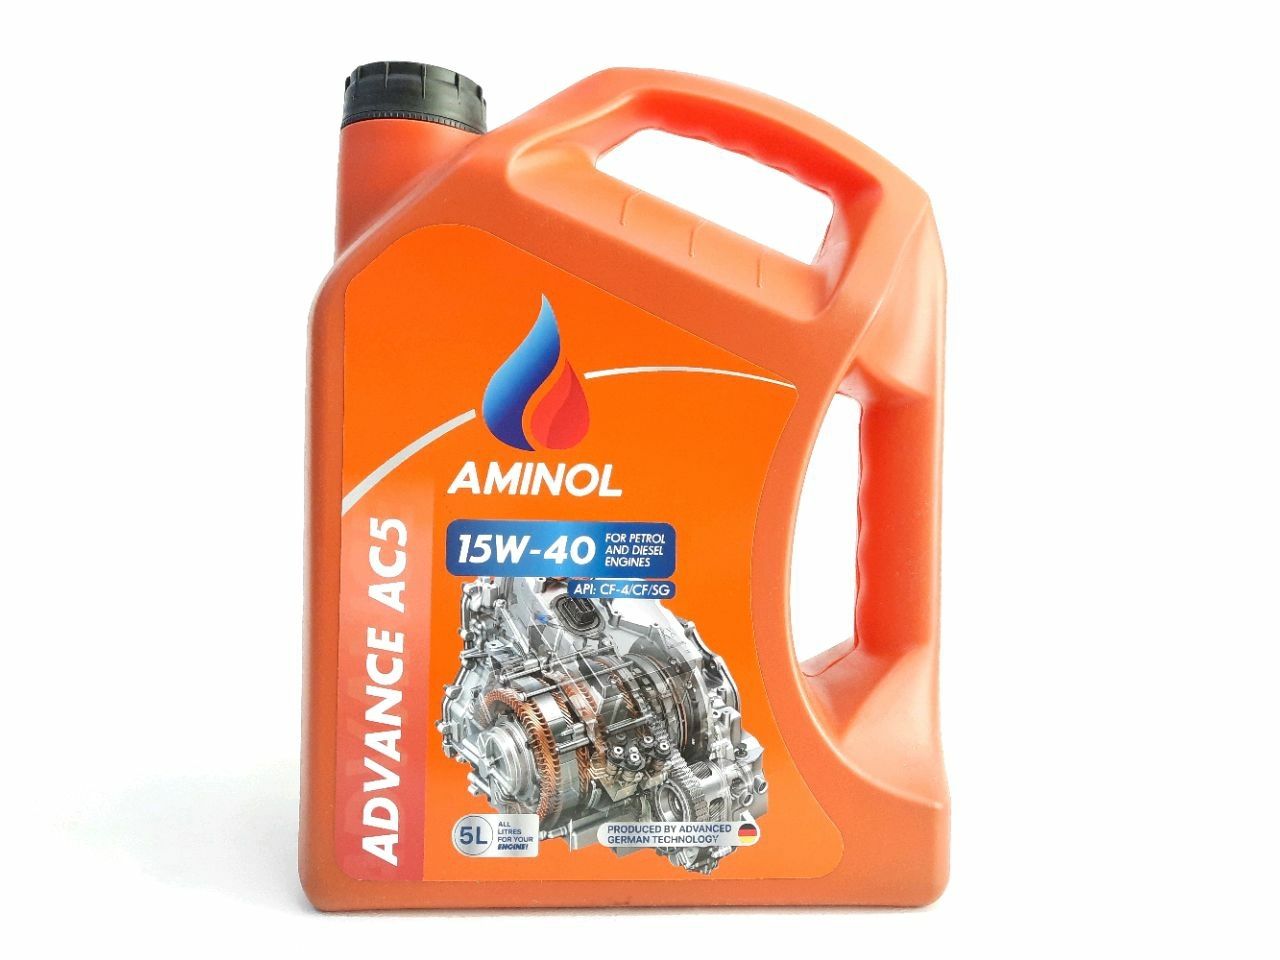 Aminol ADVANCE AC5 15w-40 (CF-4) 5L.